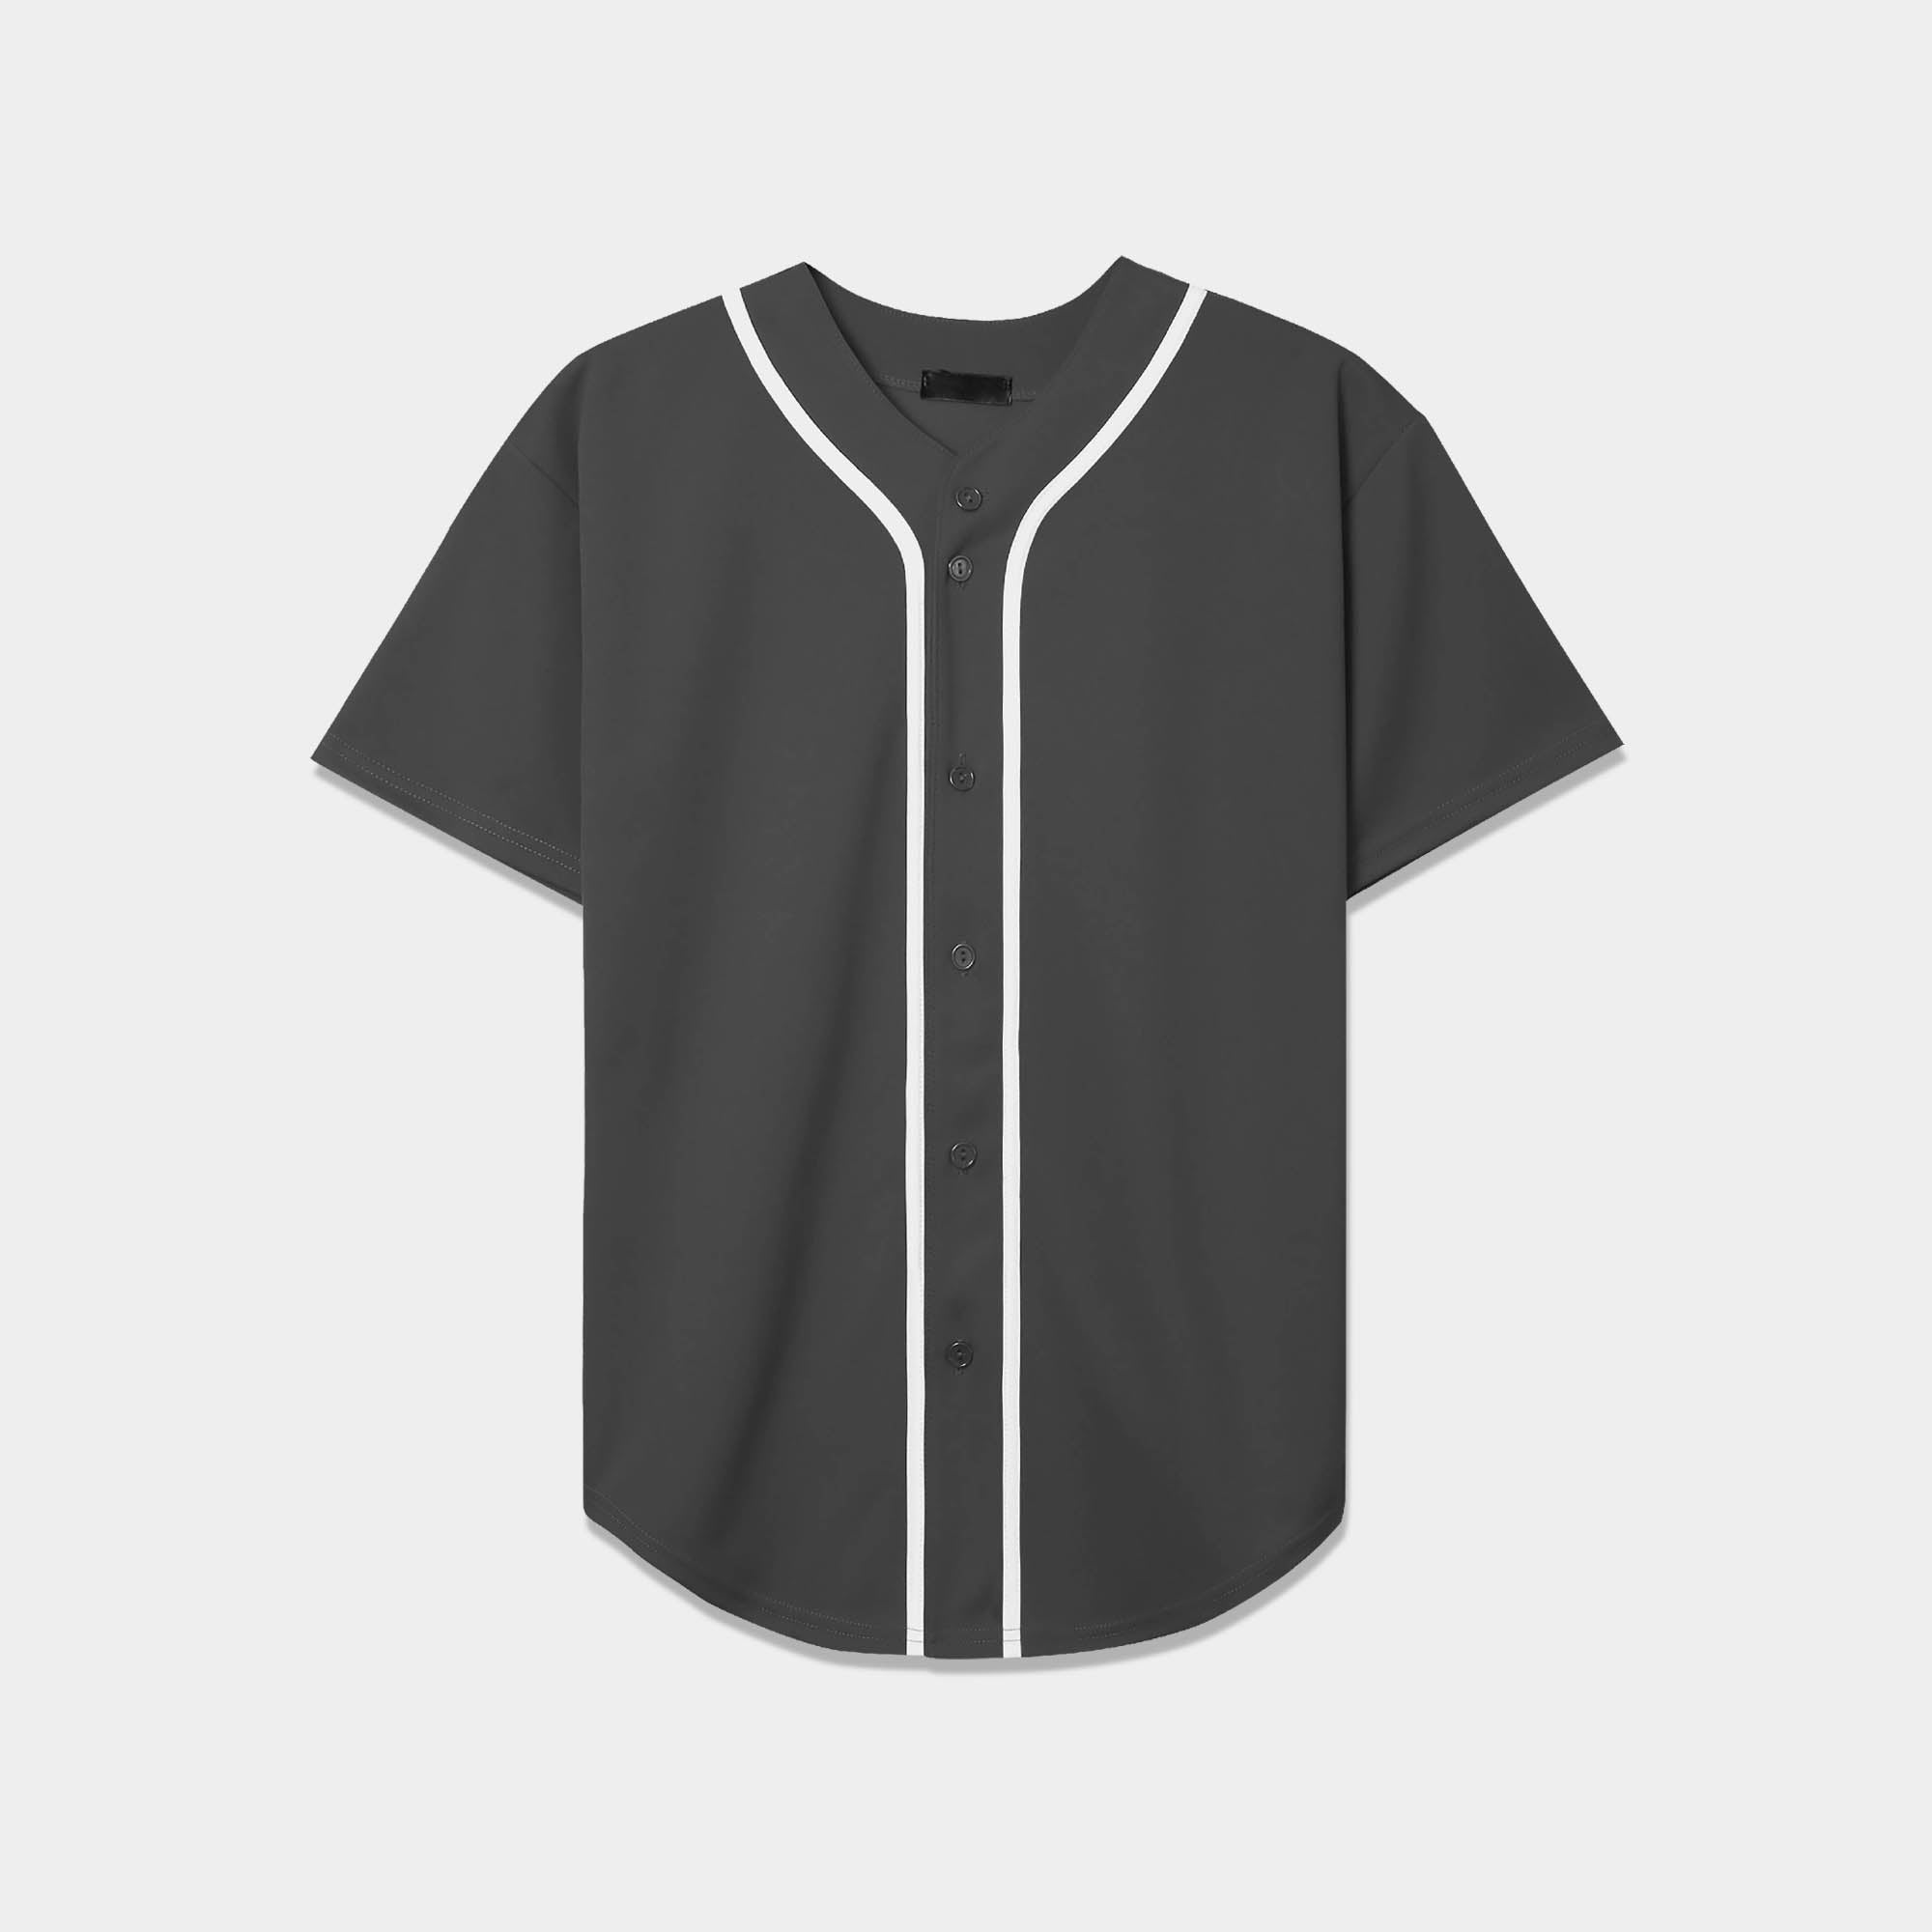 TopTie 2 Pack Men's Baseball Jersey Button Down Jersey Short Sleeve Shirt